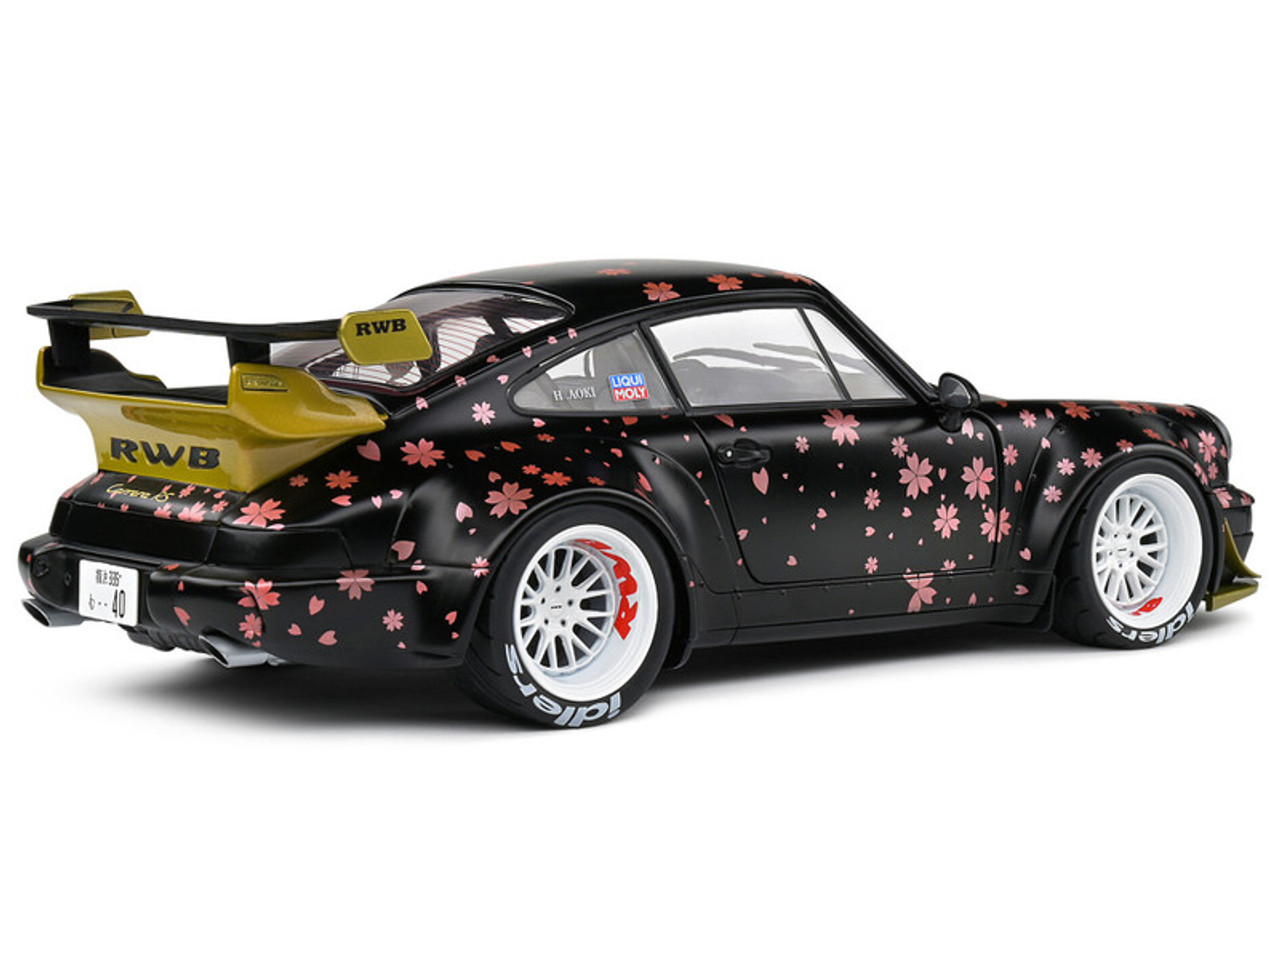 1/18 Solido 2021 Porsche 911 (964) RWB Rauh-Welt Aoki (Black Decor) Diecast Car Model